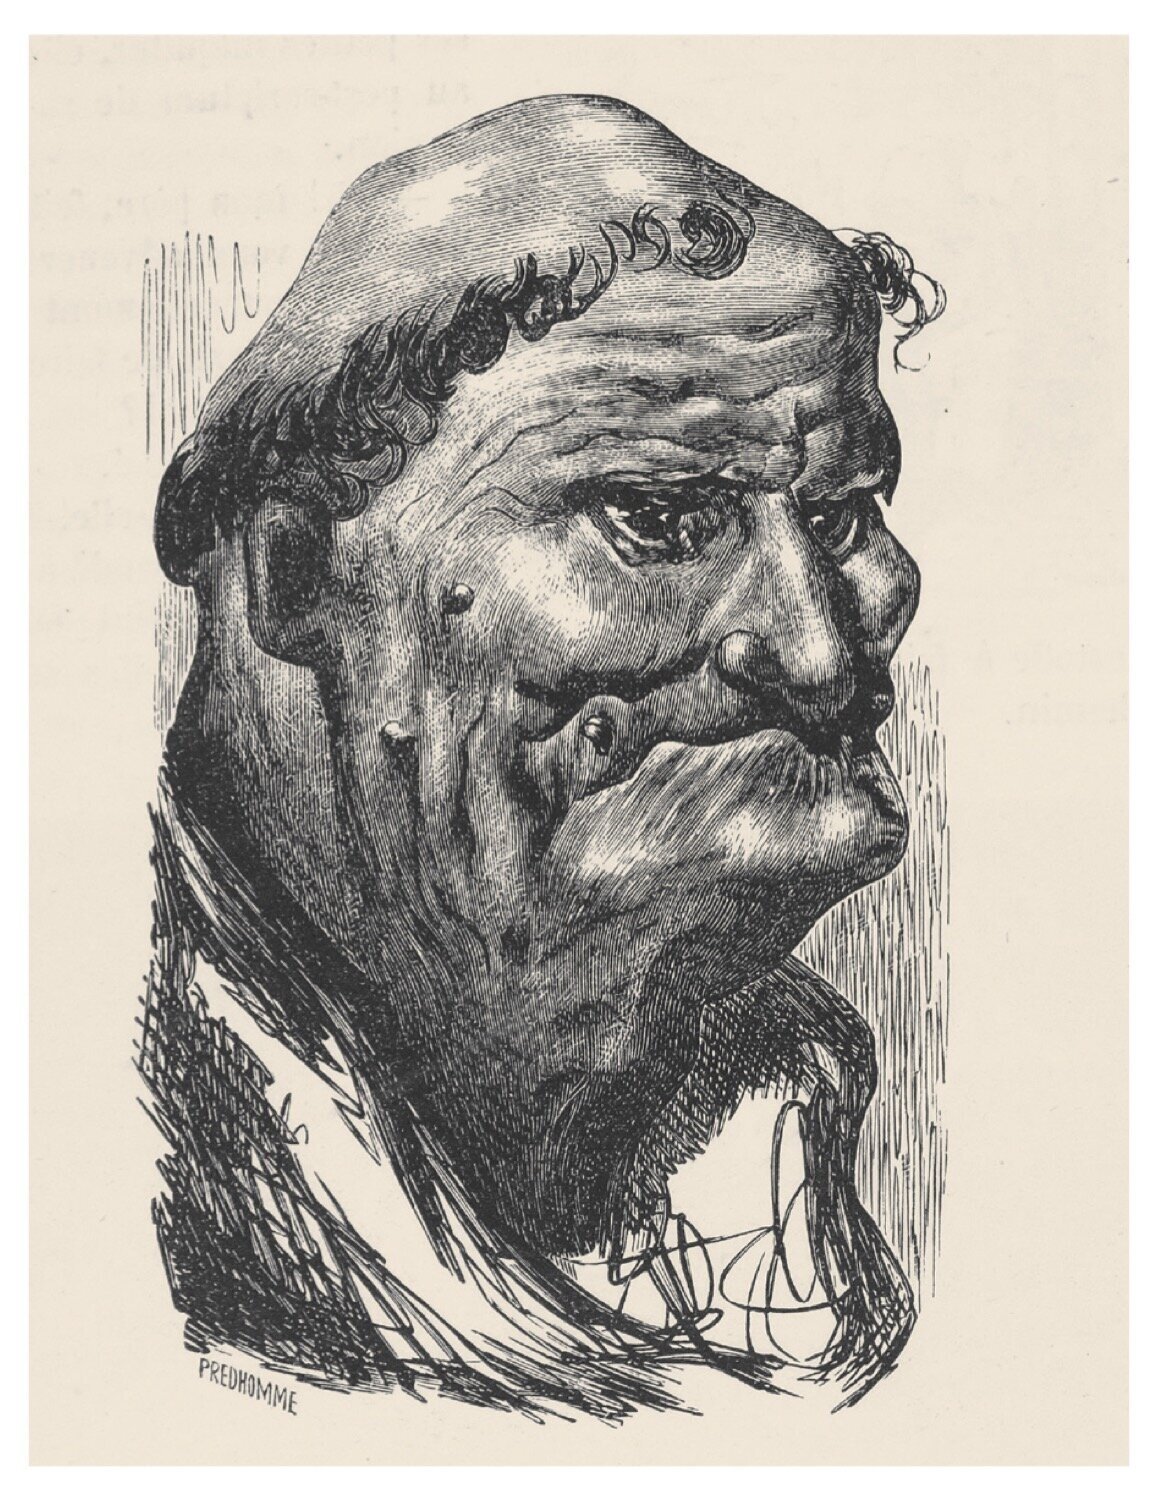  Doré’s 1855 illustrations for Balzac’s  Droll Stories  ( Les contes drolatiques ) 